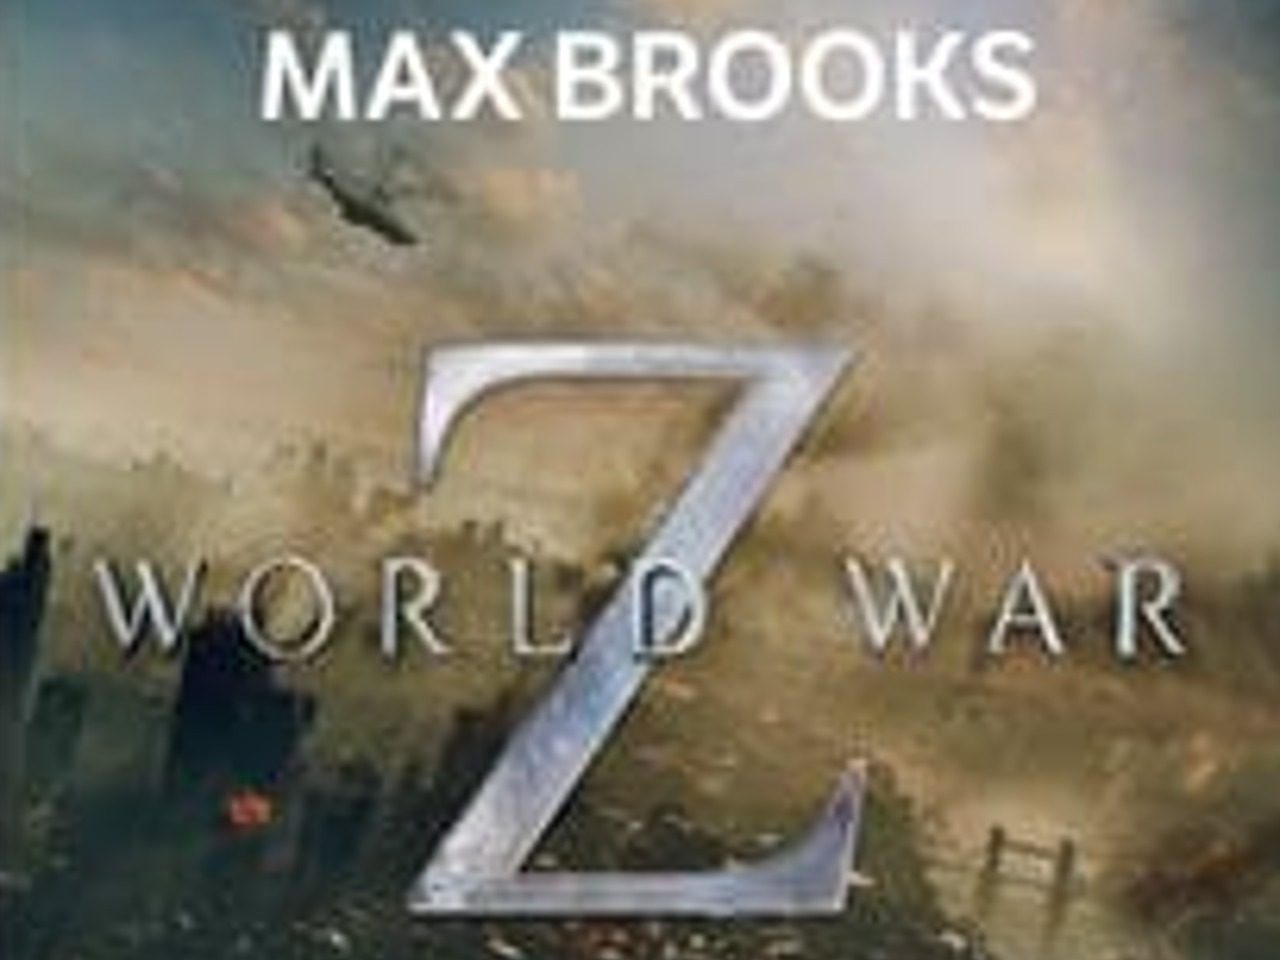 Couverture de "World War Z" de Max Brooks